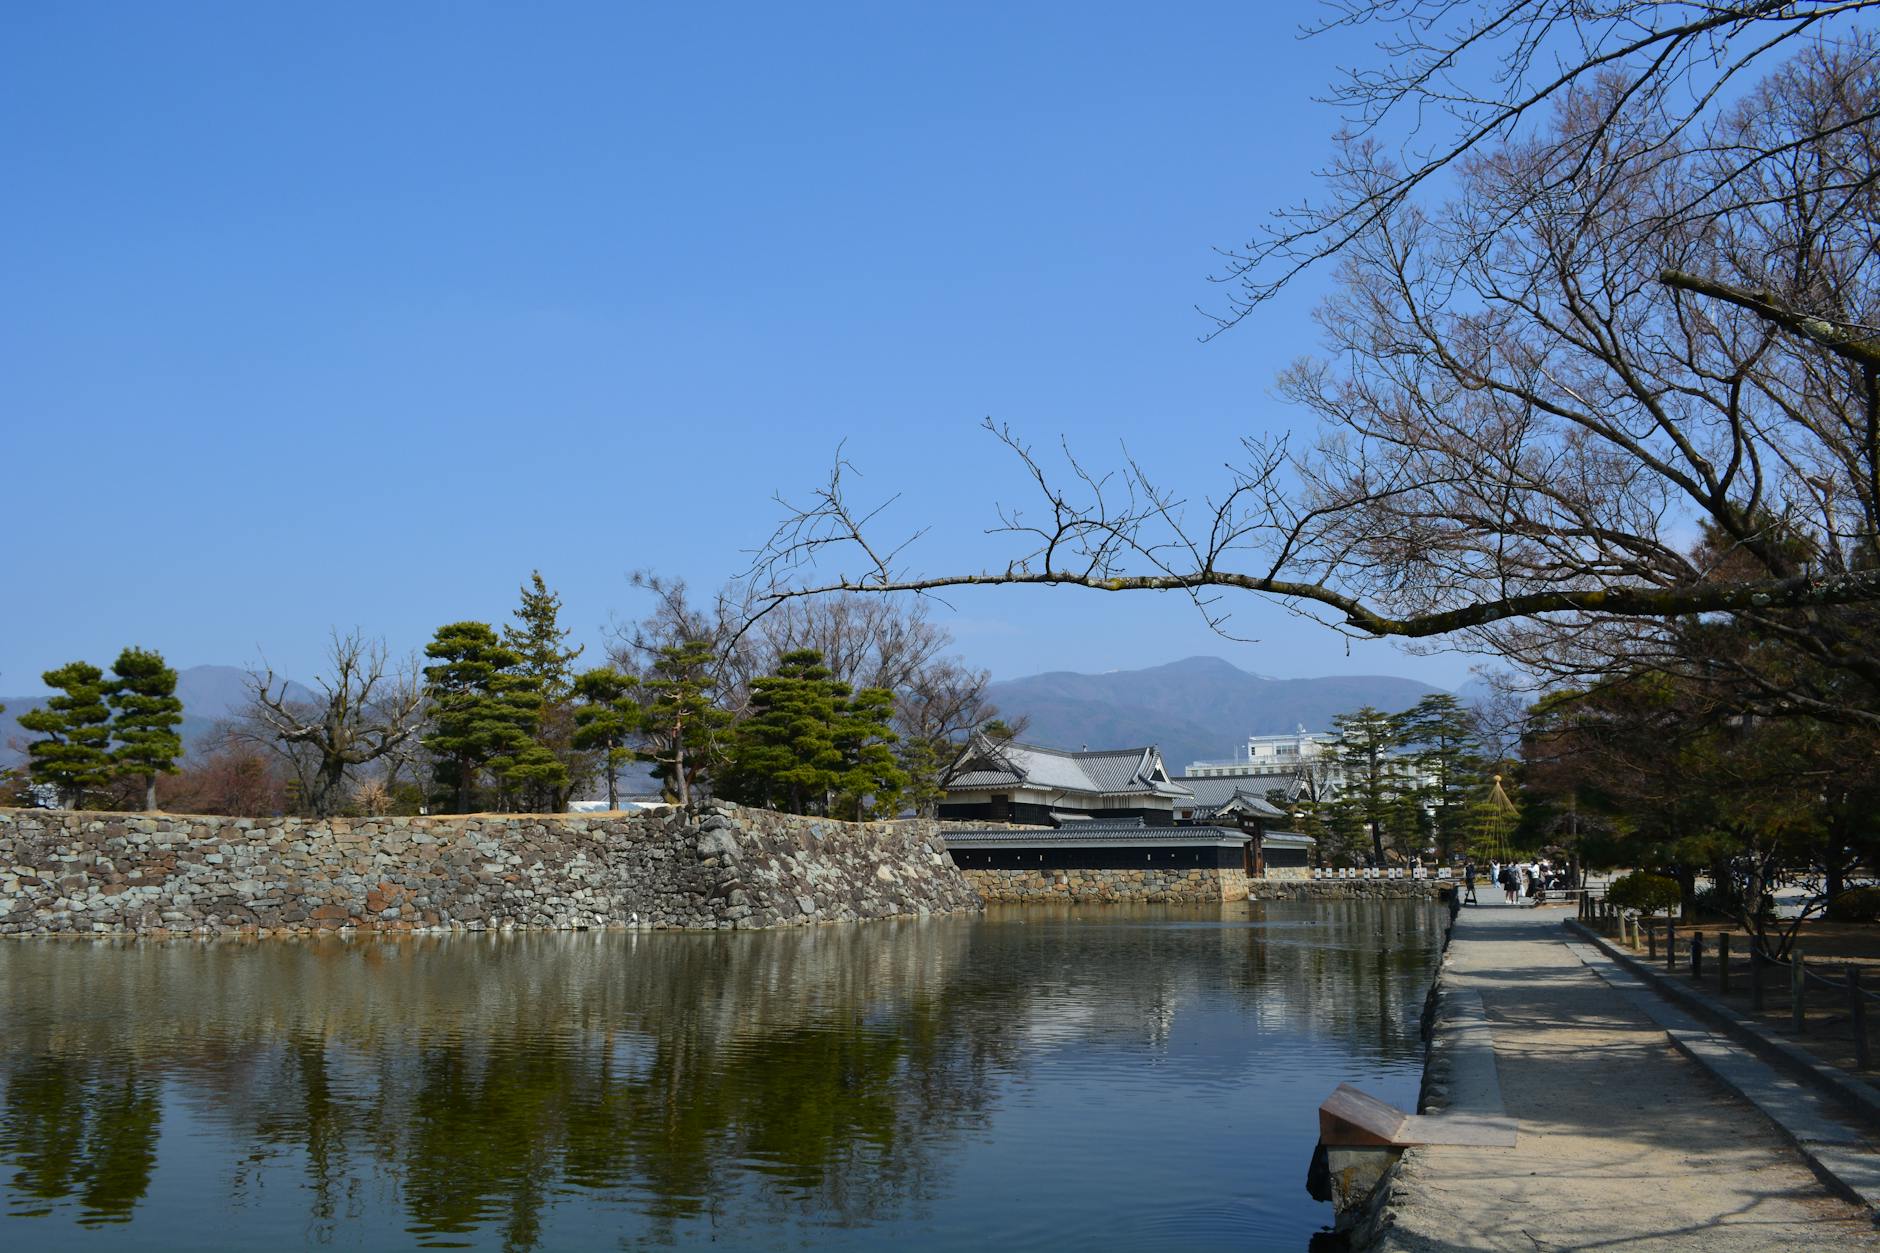 Park near Matsumoto Castle in Japan